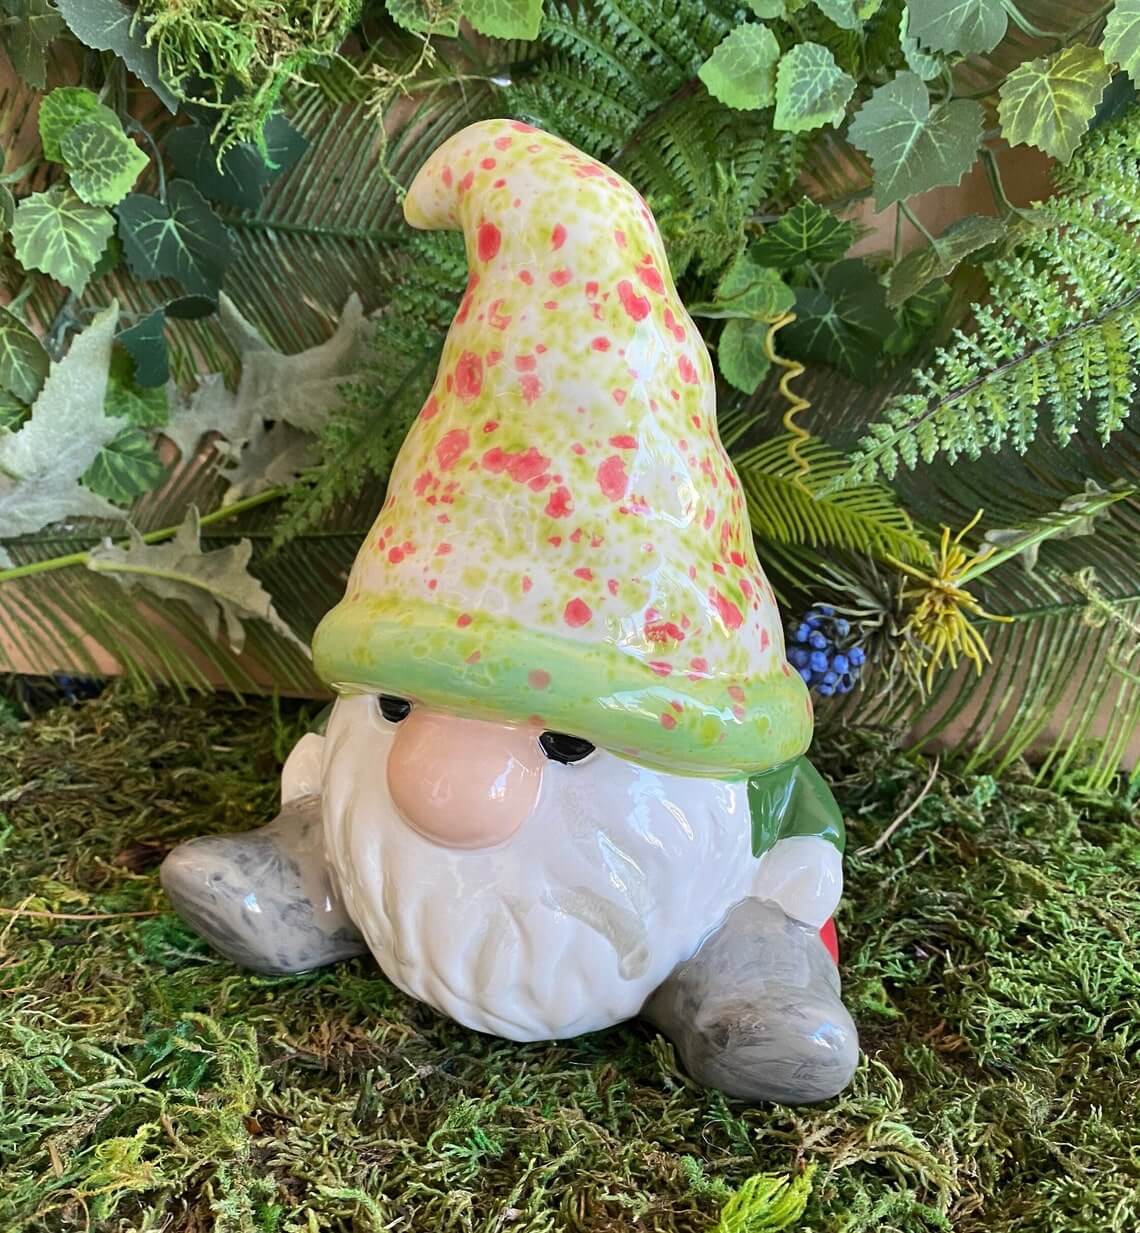 Fantasy Fairy Garden Gnome Outdoor Decoration